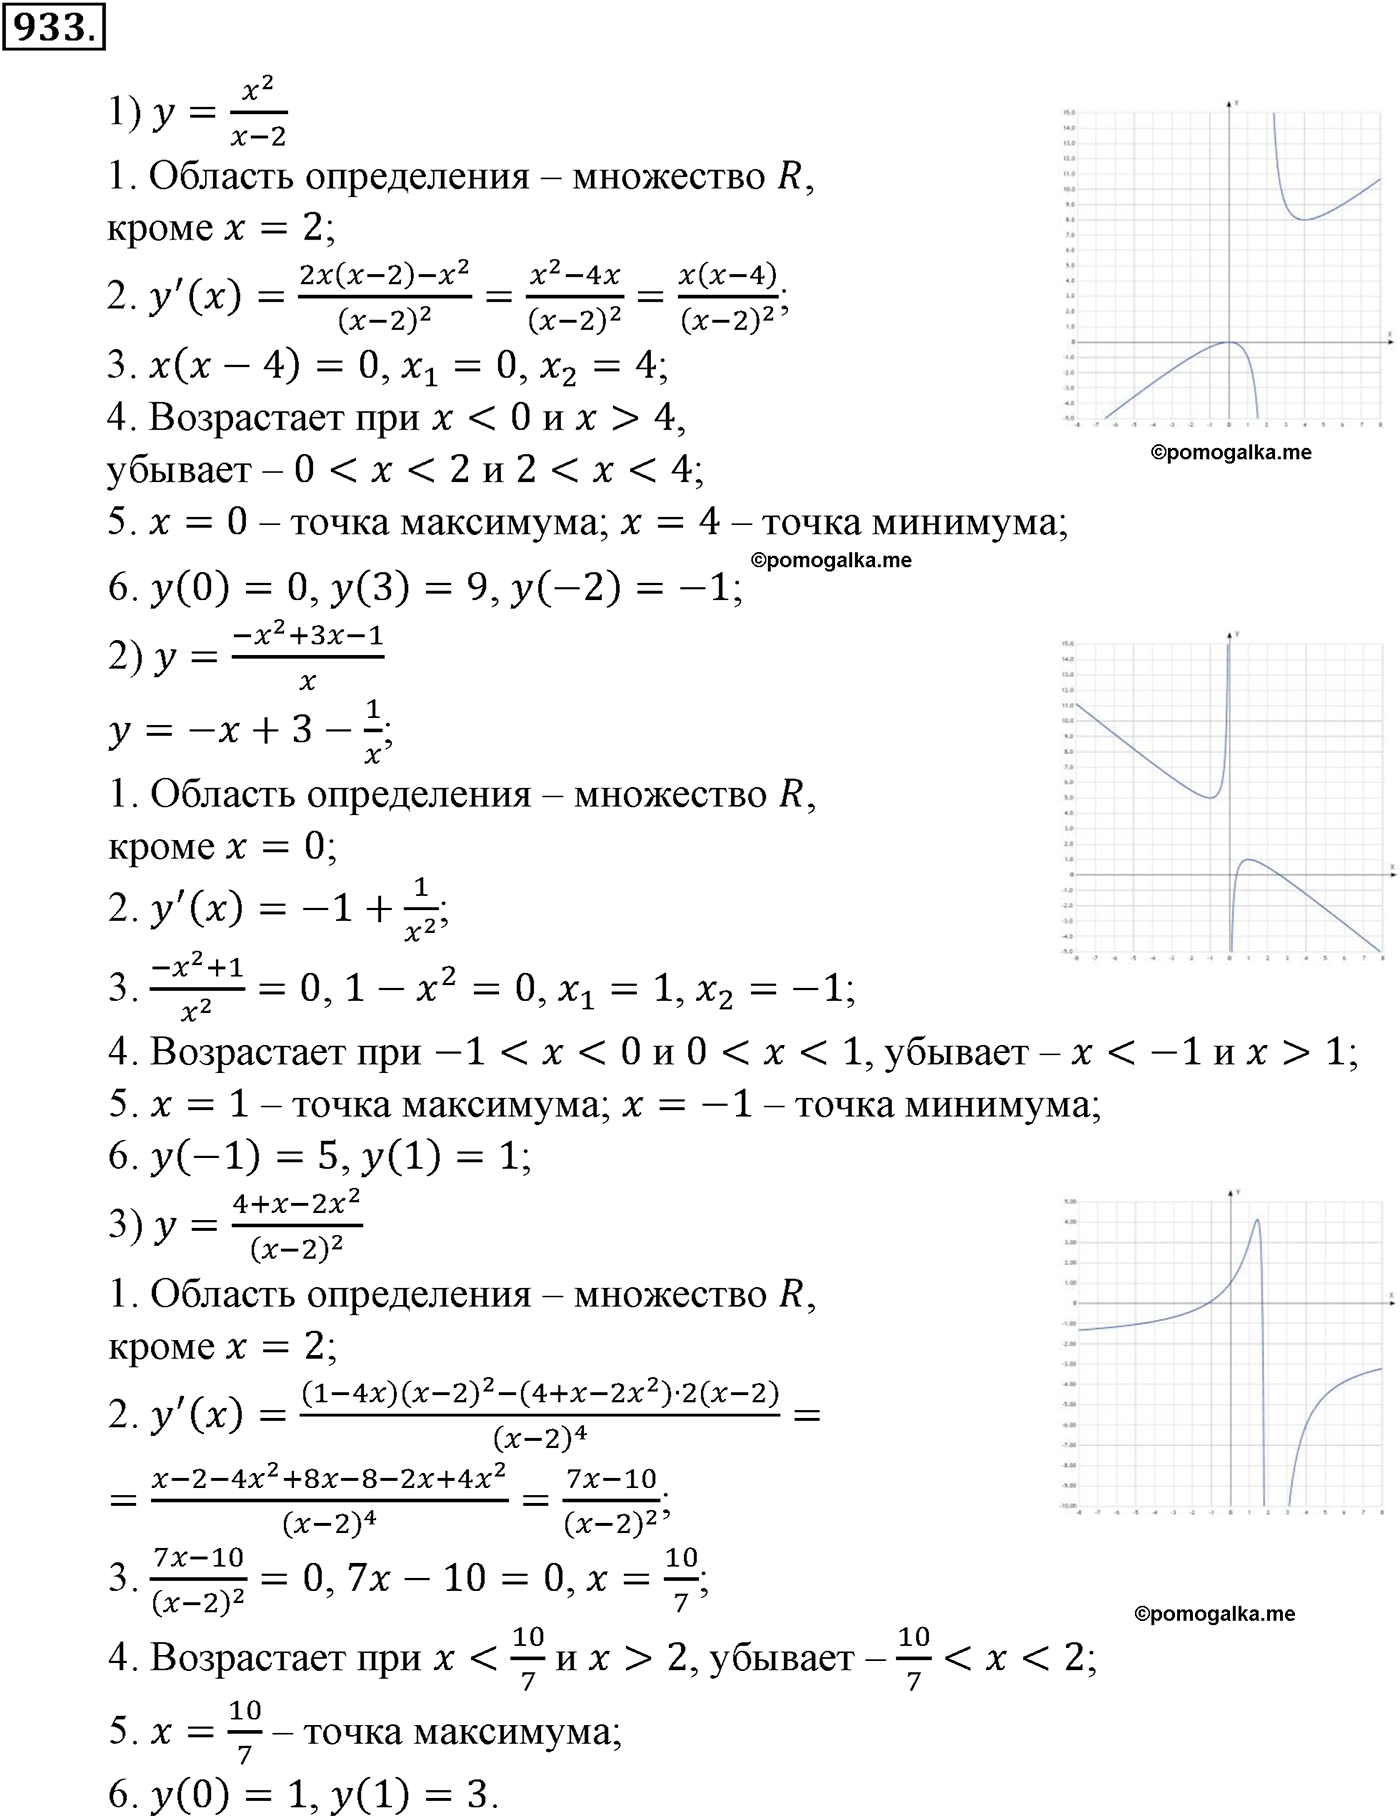 разбор задачи №933 по алгебре за 10-11 класс из учебника Алимова, Колягина